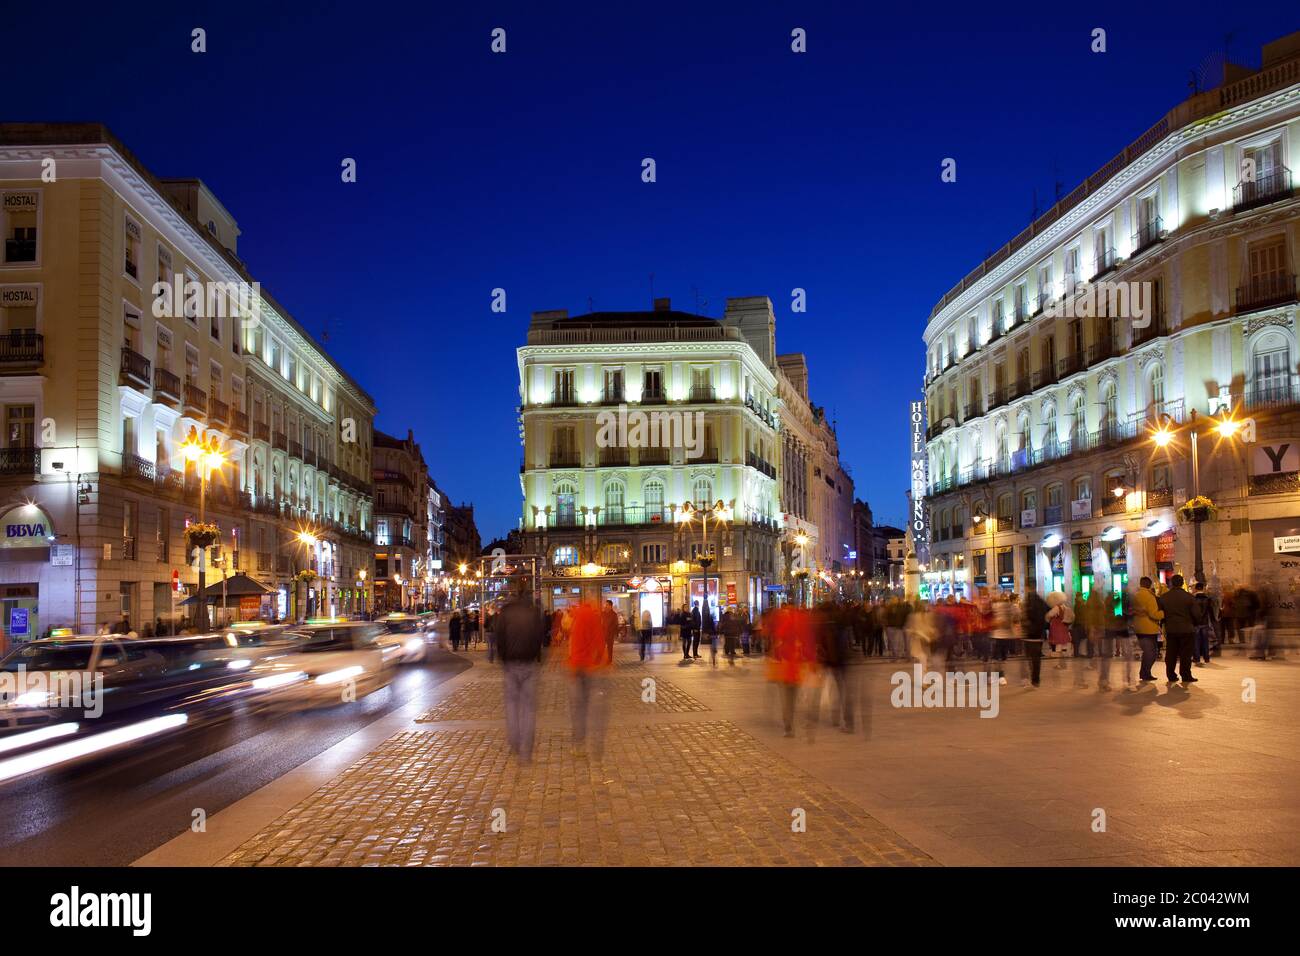 Innenstadt, Madrid, Spanien, Puerta del Sol ein geschäftiges und traditionelles Viertel in der Innenstadt. Stockfoto